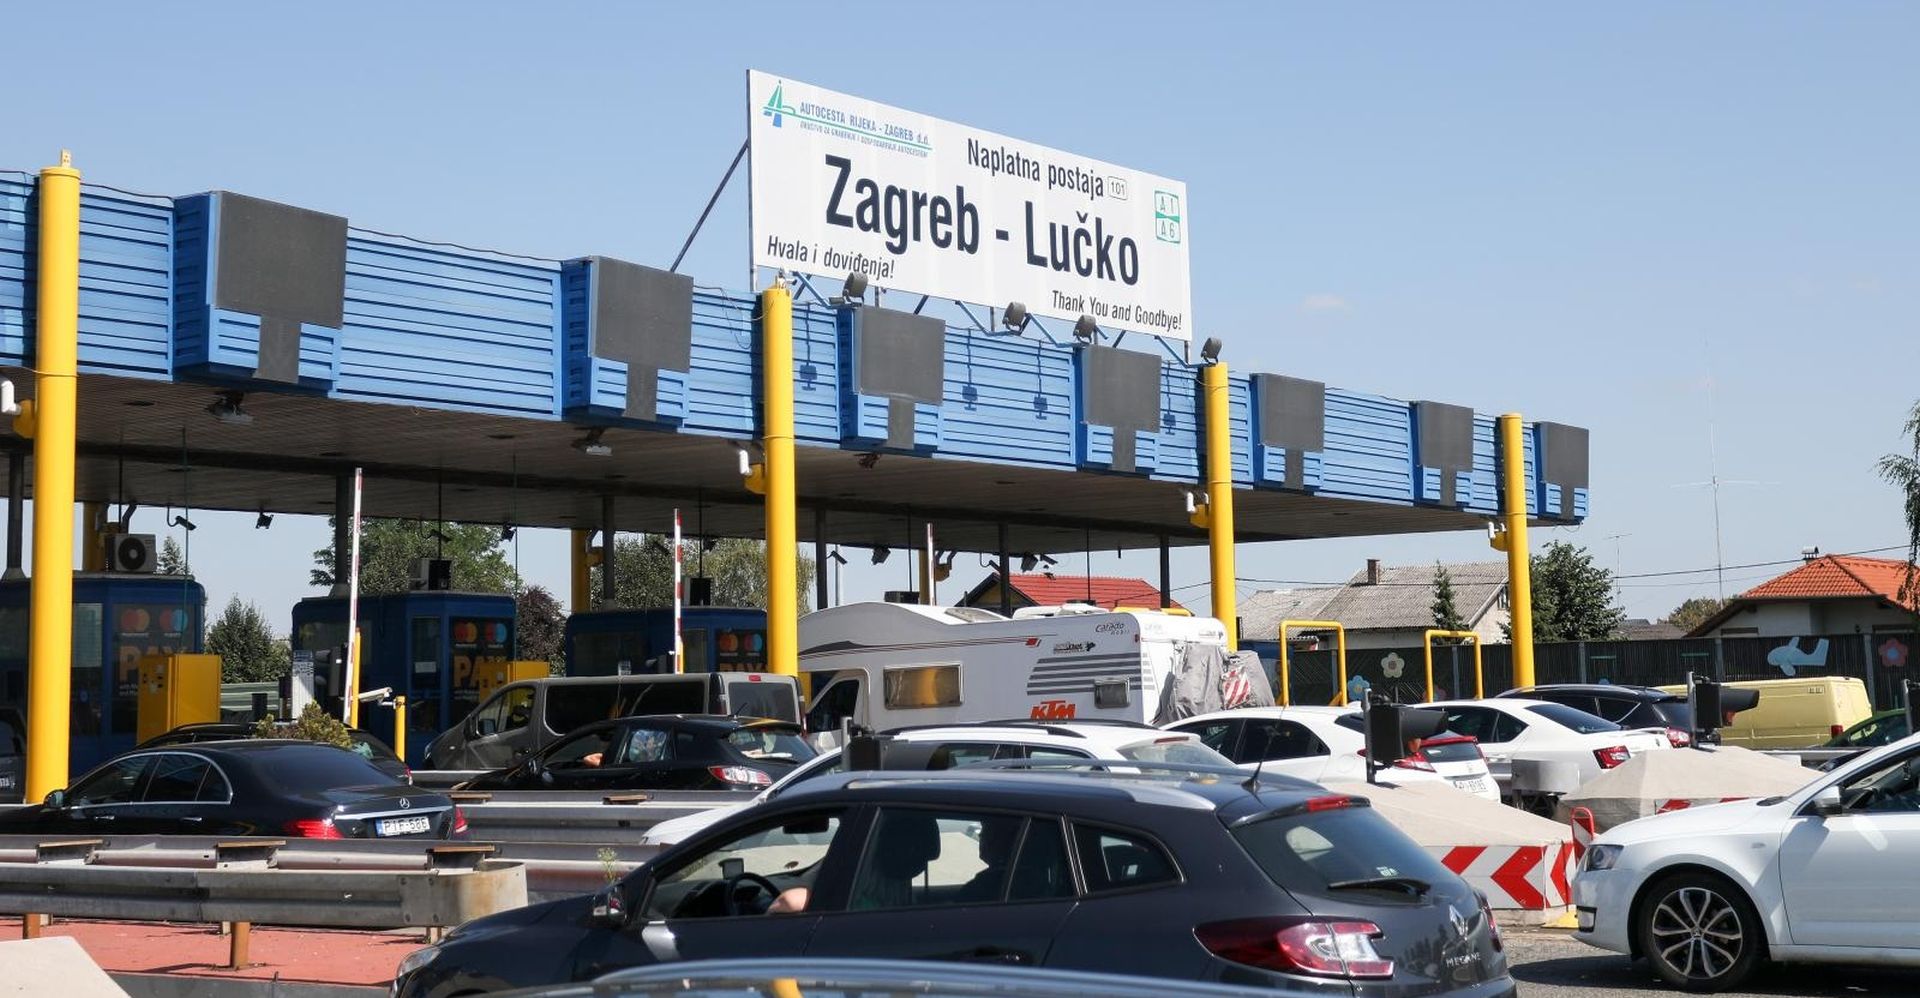 22.08.2020., Zagreb - Pojacan promet na naplatnim kucicama Lucko u smjeru Zagreba.
Photo: Borna Filic/PIXSELL